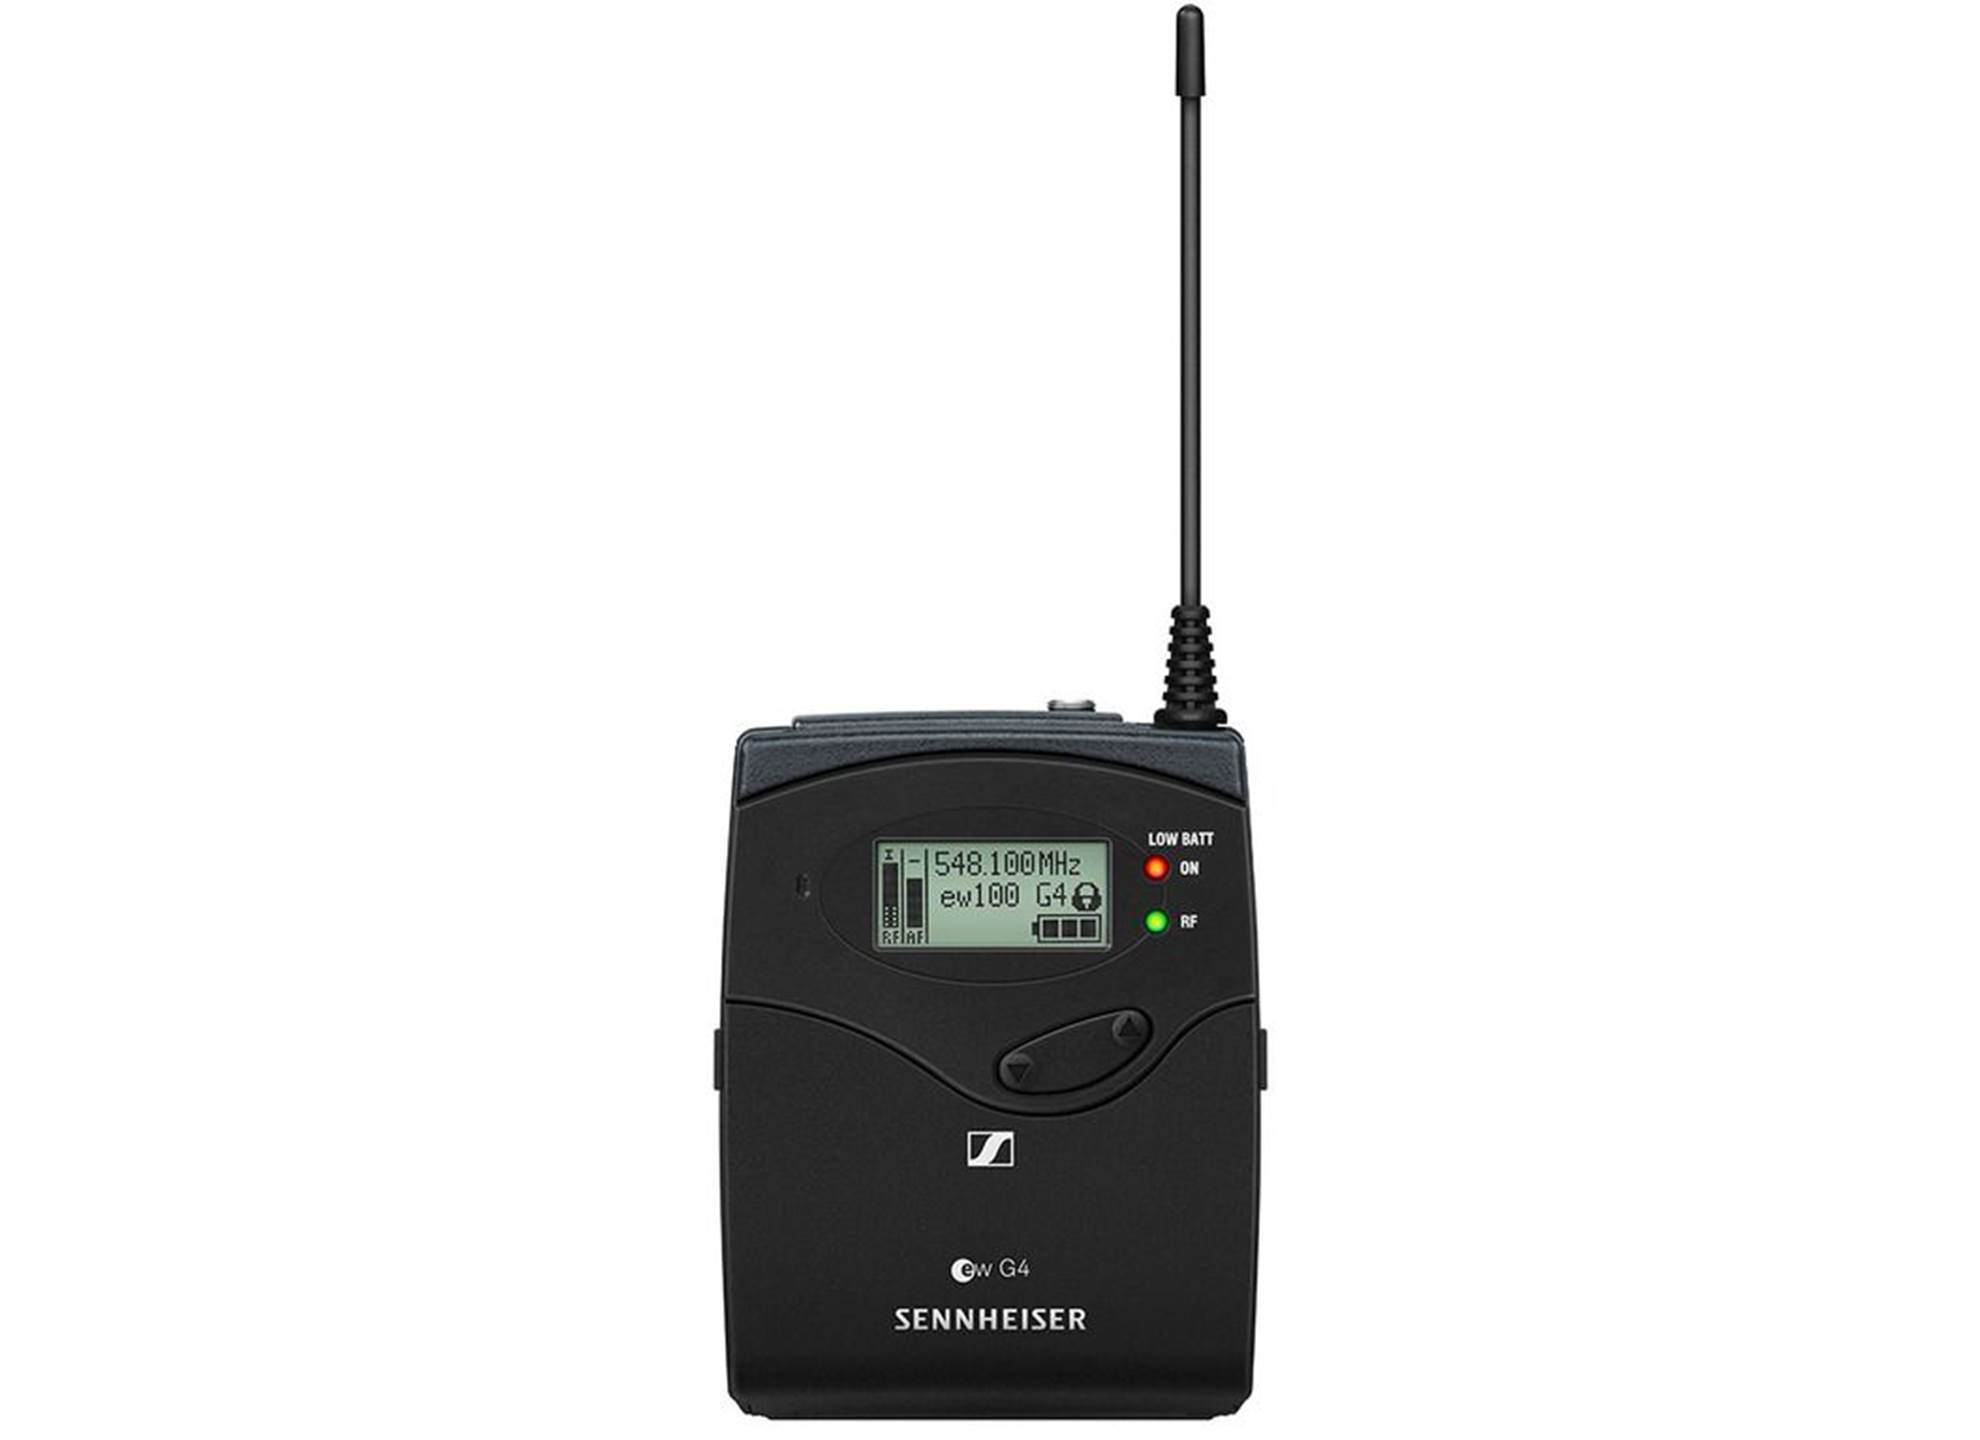 EK 100 G4-B 626 - 668 MHz